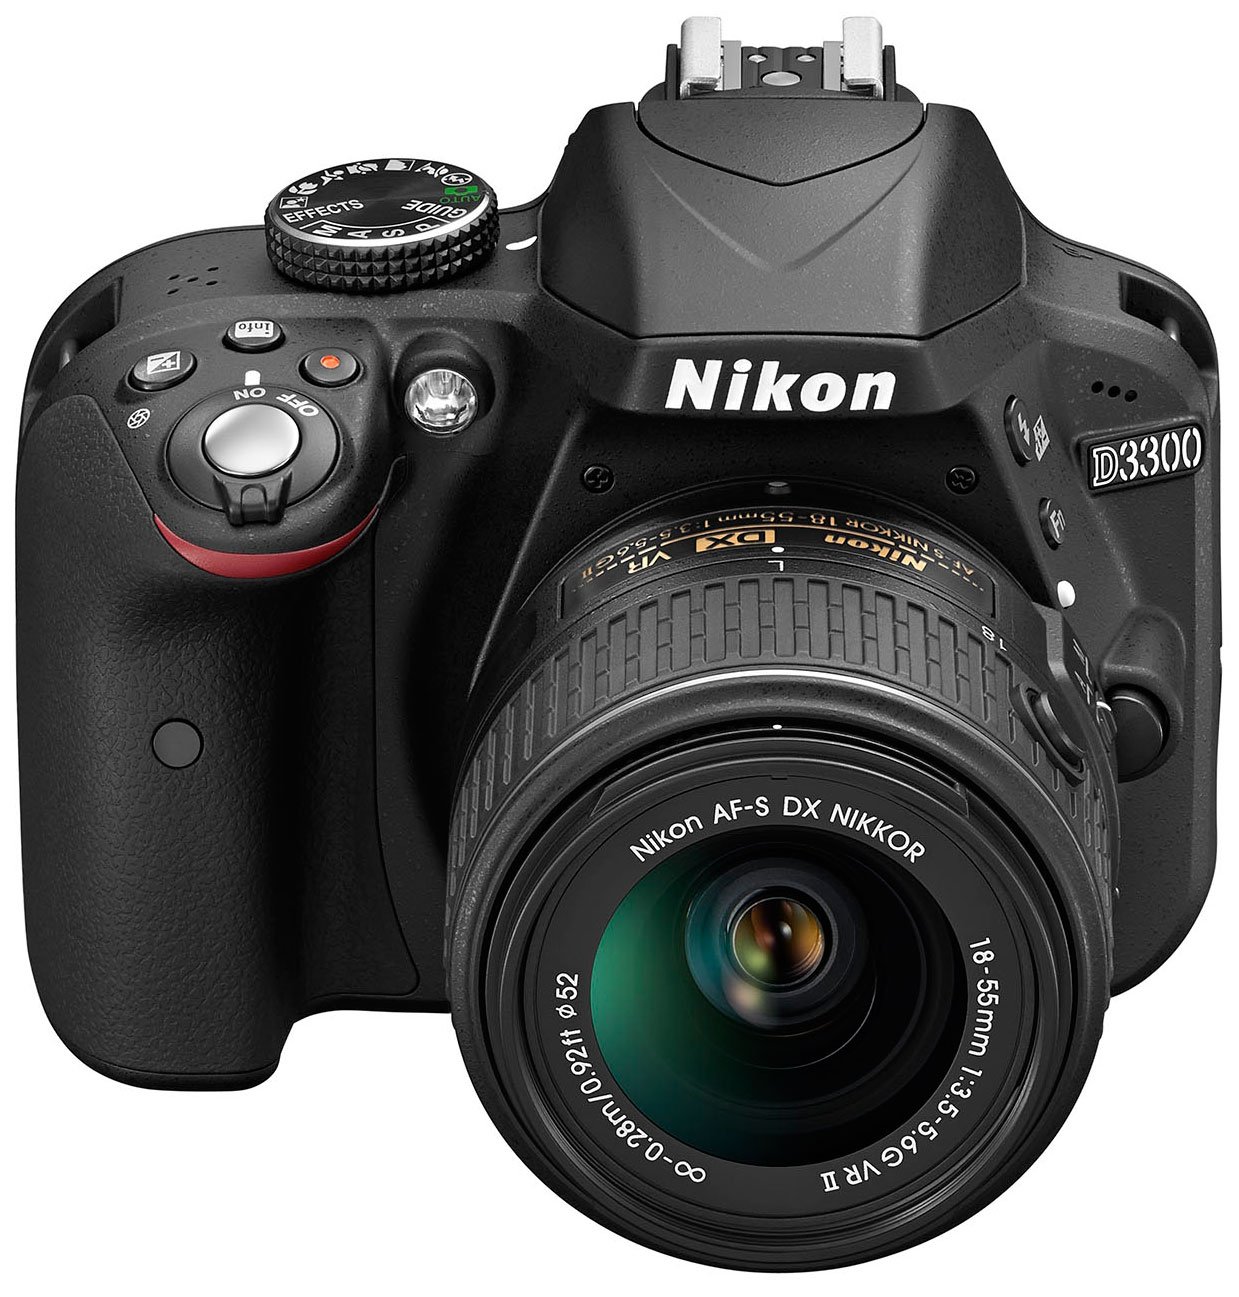 Rosa superficial Cuyo Nikon D3300 review | Cameralabs